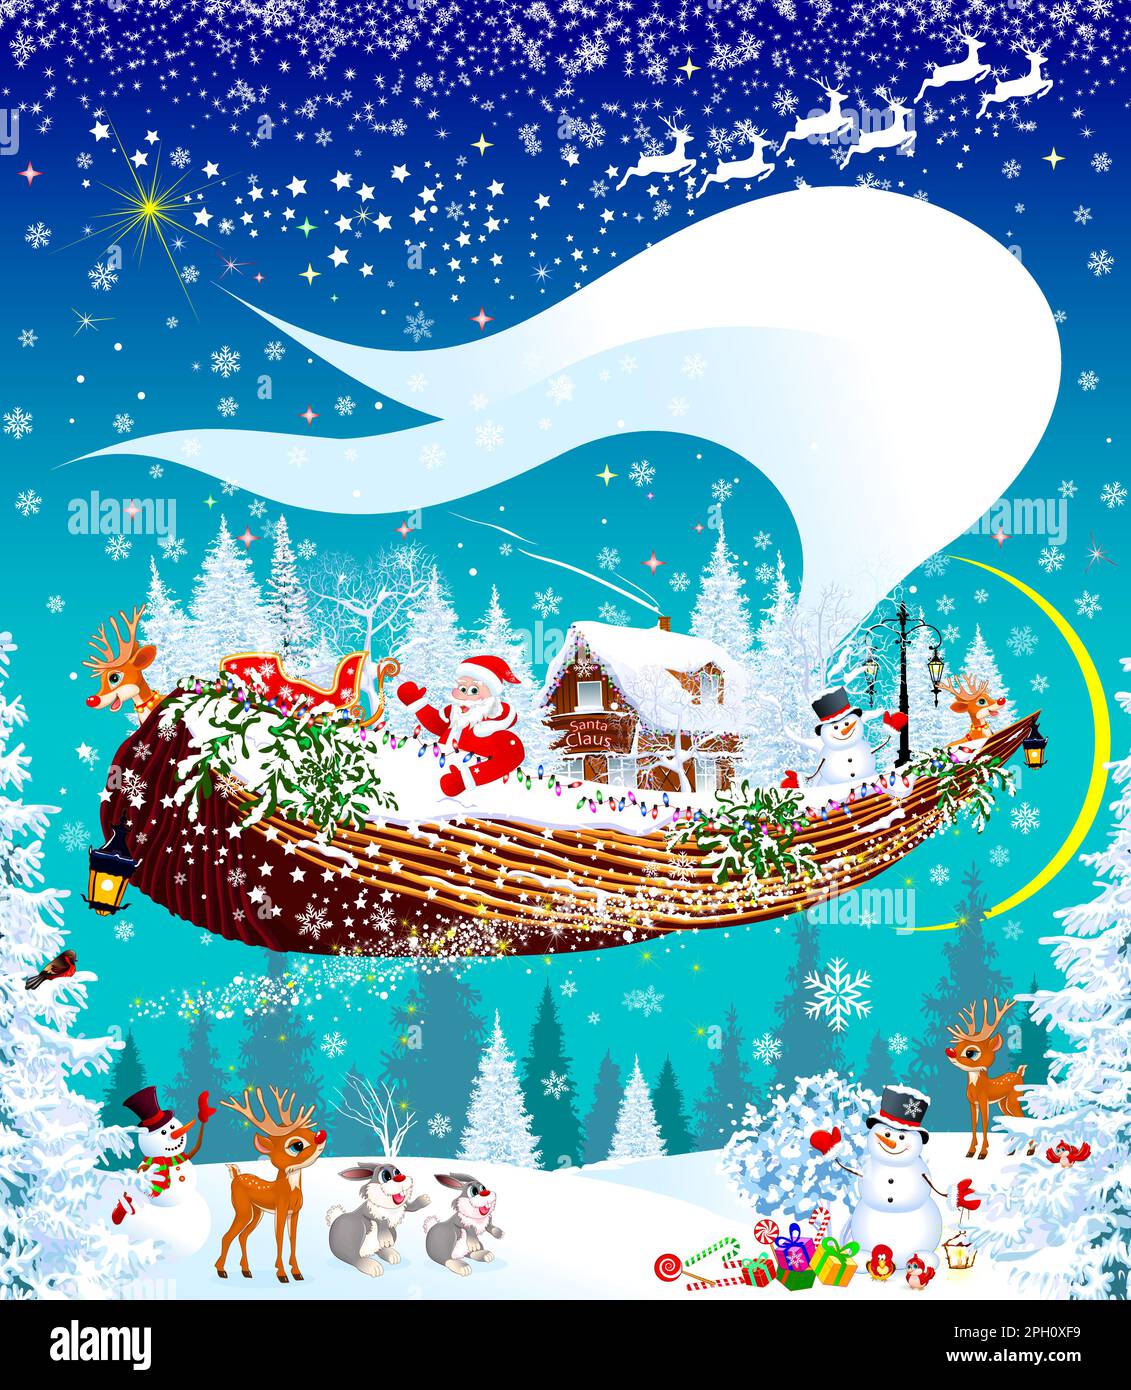 Der Weihnachtsmann, ein Rentier und ein Schneemann fliegen auf einem fliegenden Schiff durch den Himmel, vor einem verschneiten Winterwald. Weihnachtsabend. Waldtiere freuen sich Stock Vektor